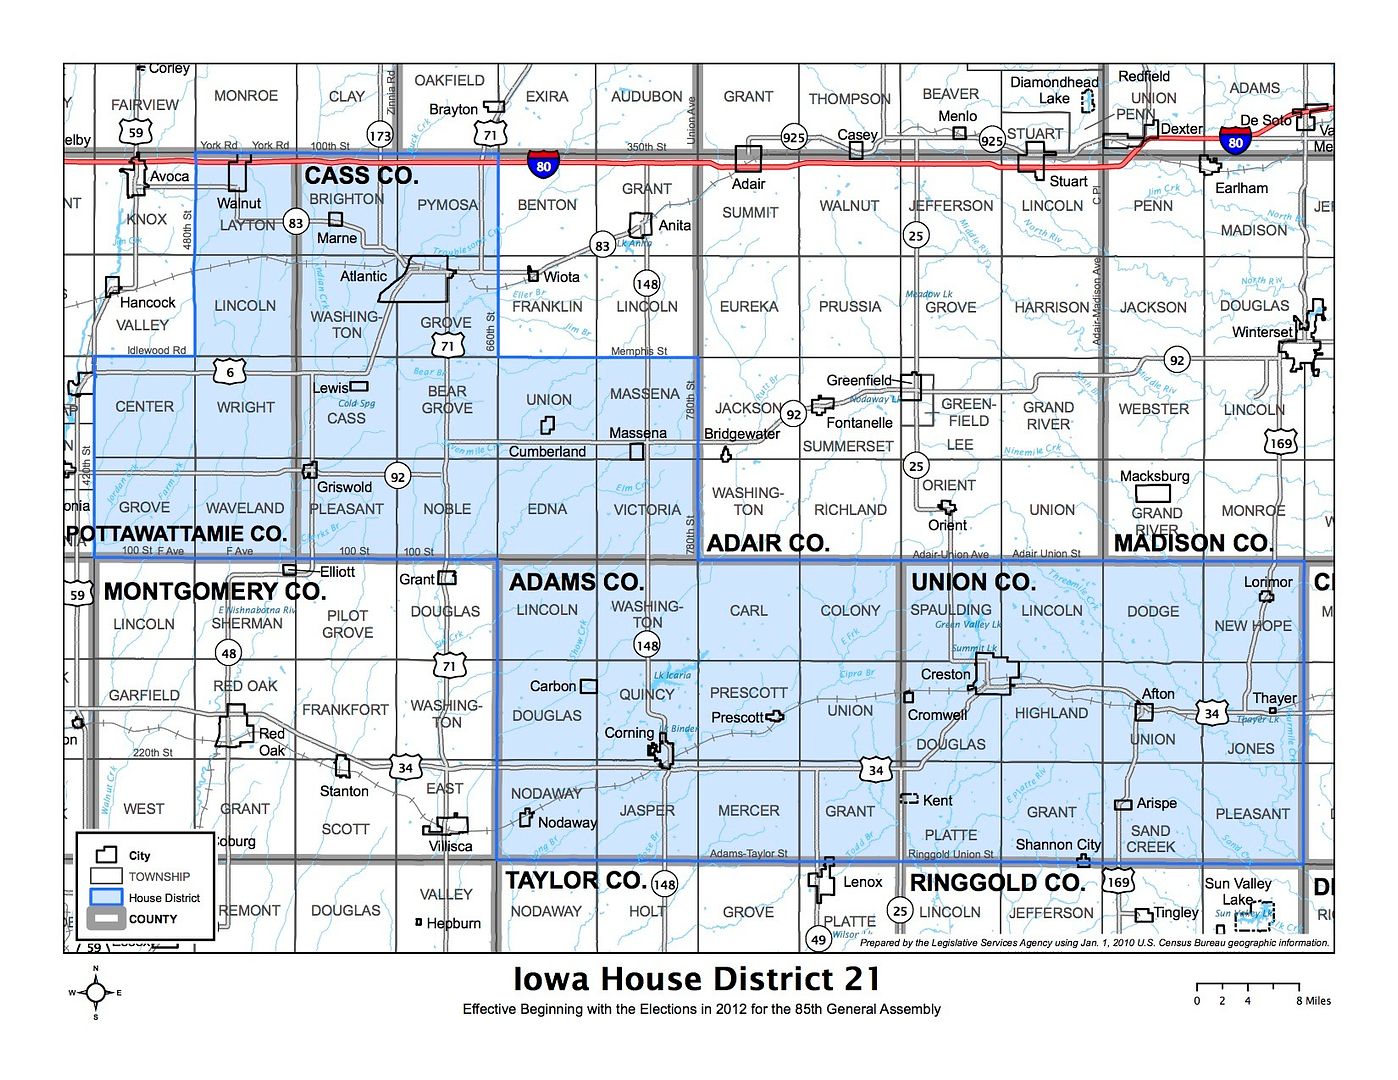 Iowa House district 21 photo IowaHD21_zpsyxpnunhc.jpg